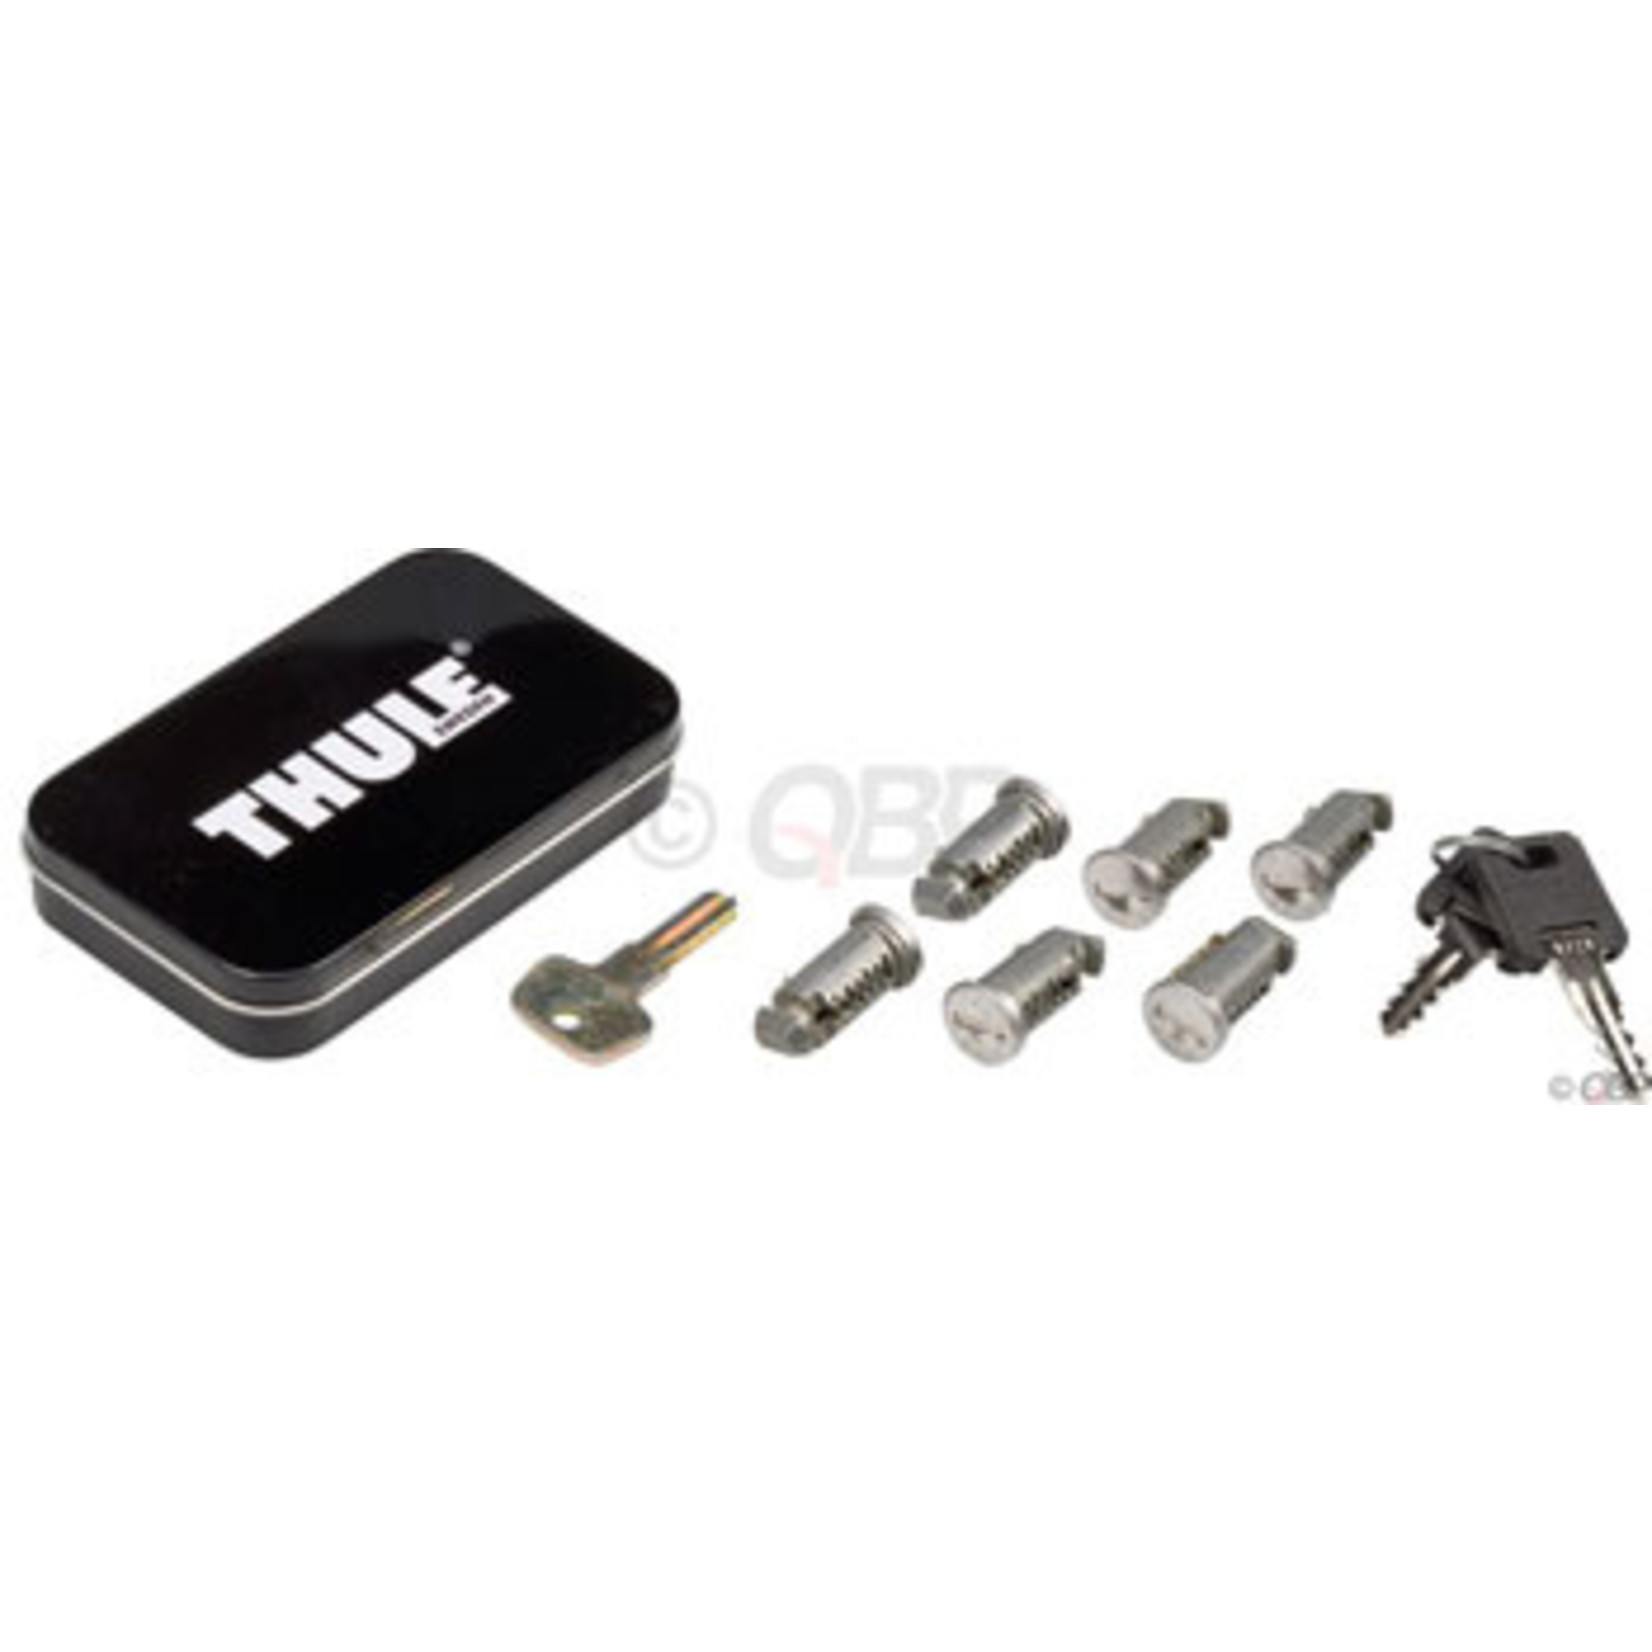 Thule Thule 596 Keyed-Alike Lock Cores: 6-Pack